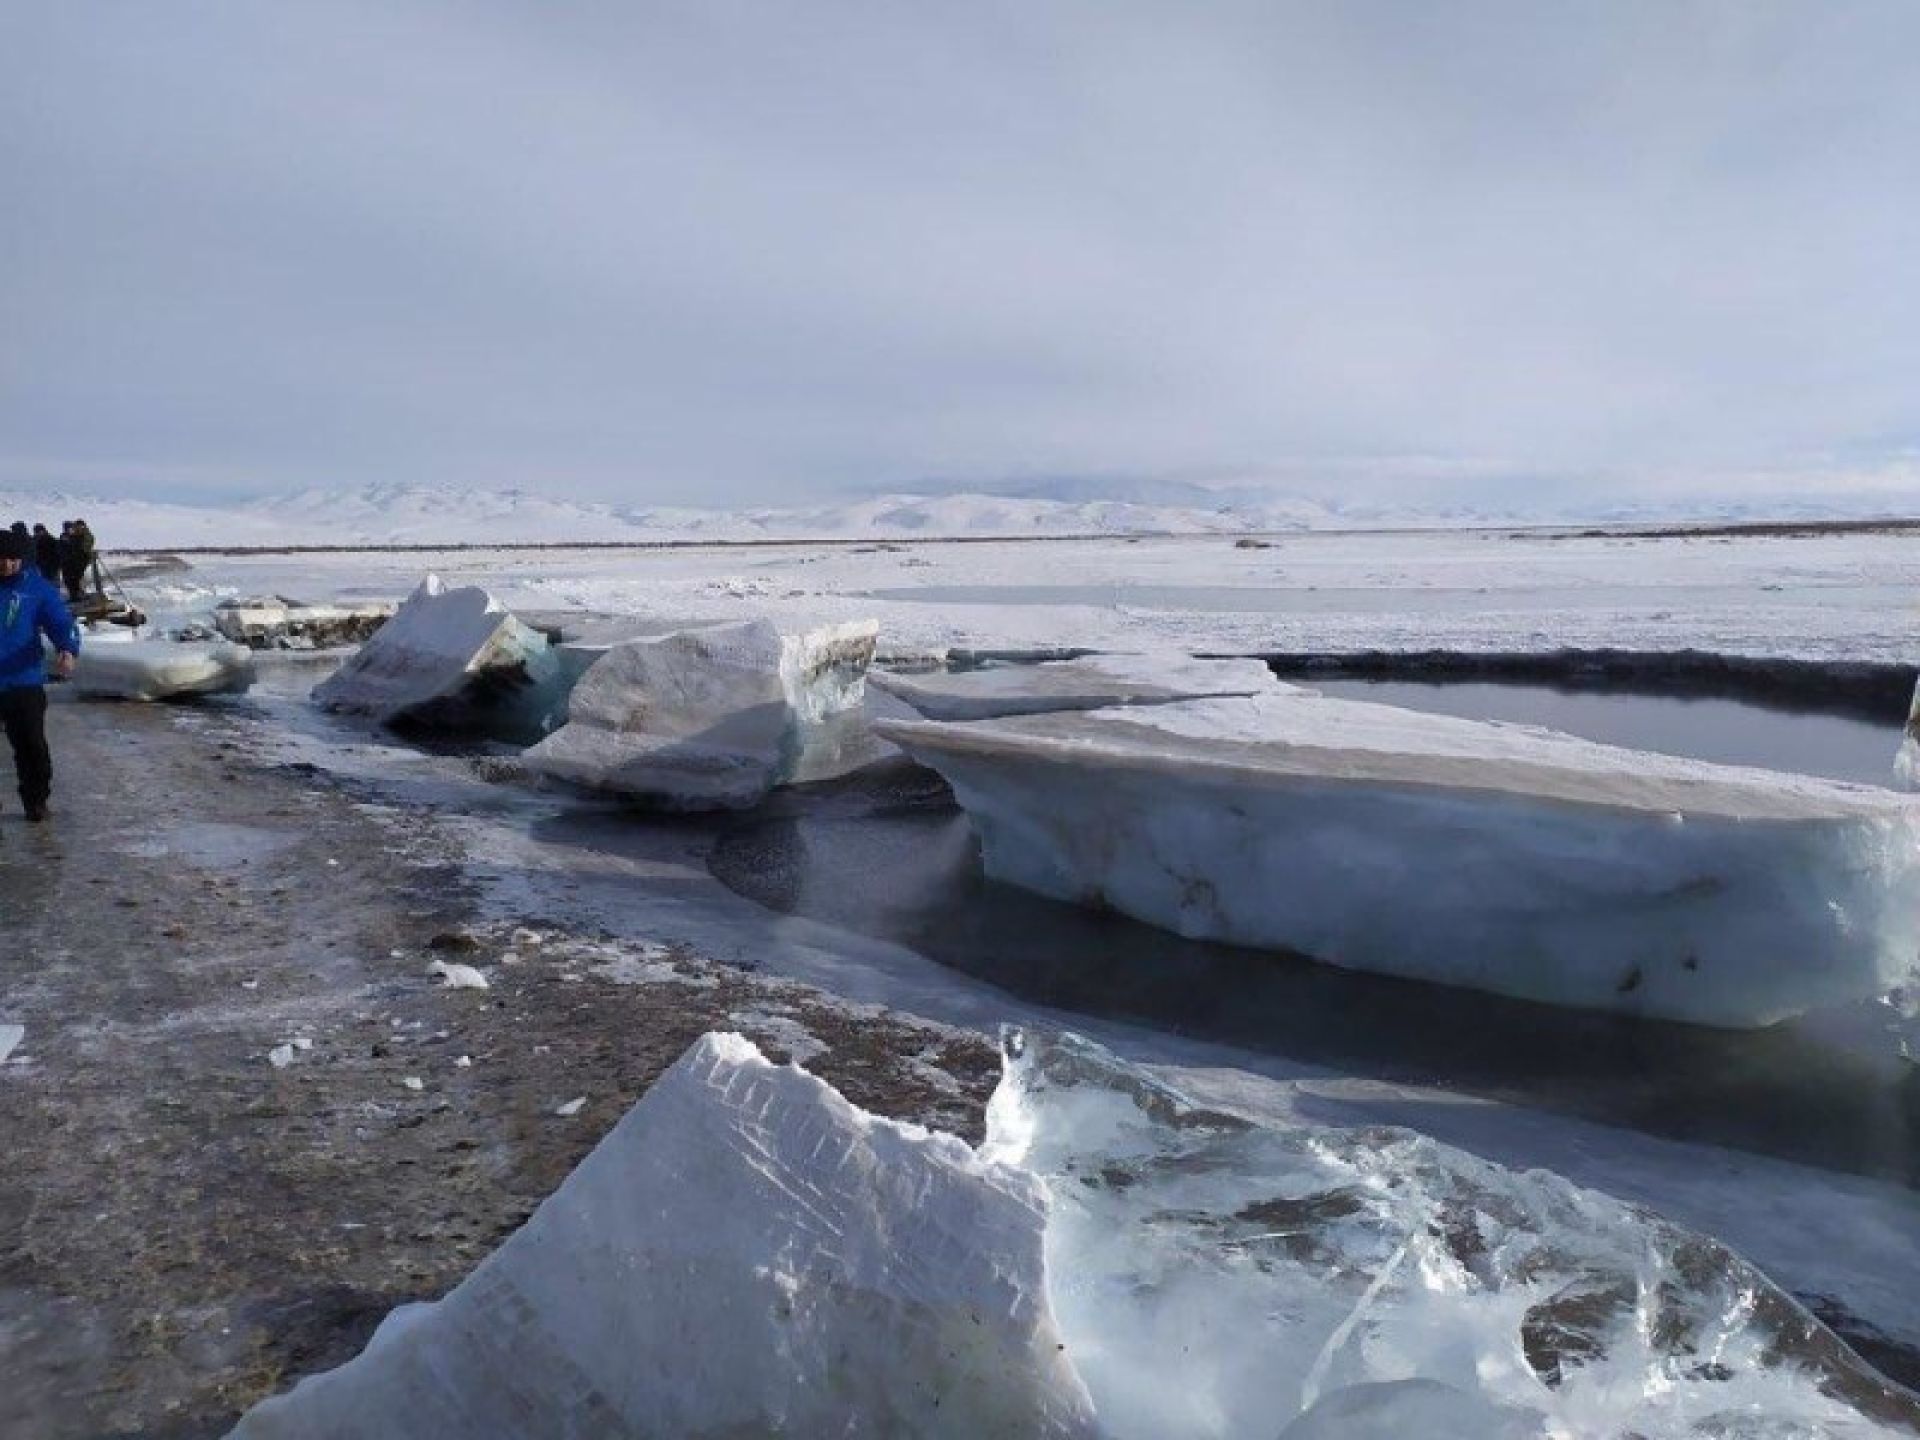 Кусочки льда на реке. Река скованная льдом. Ледяные глыбы на Байкале. Лед на реке. Глыба льда на реке.